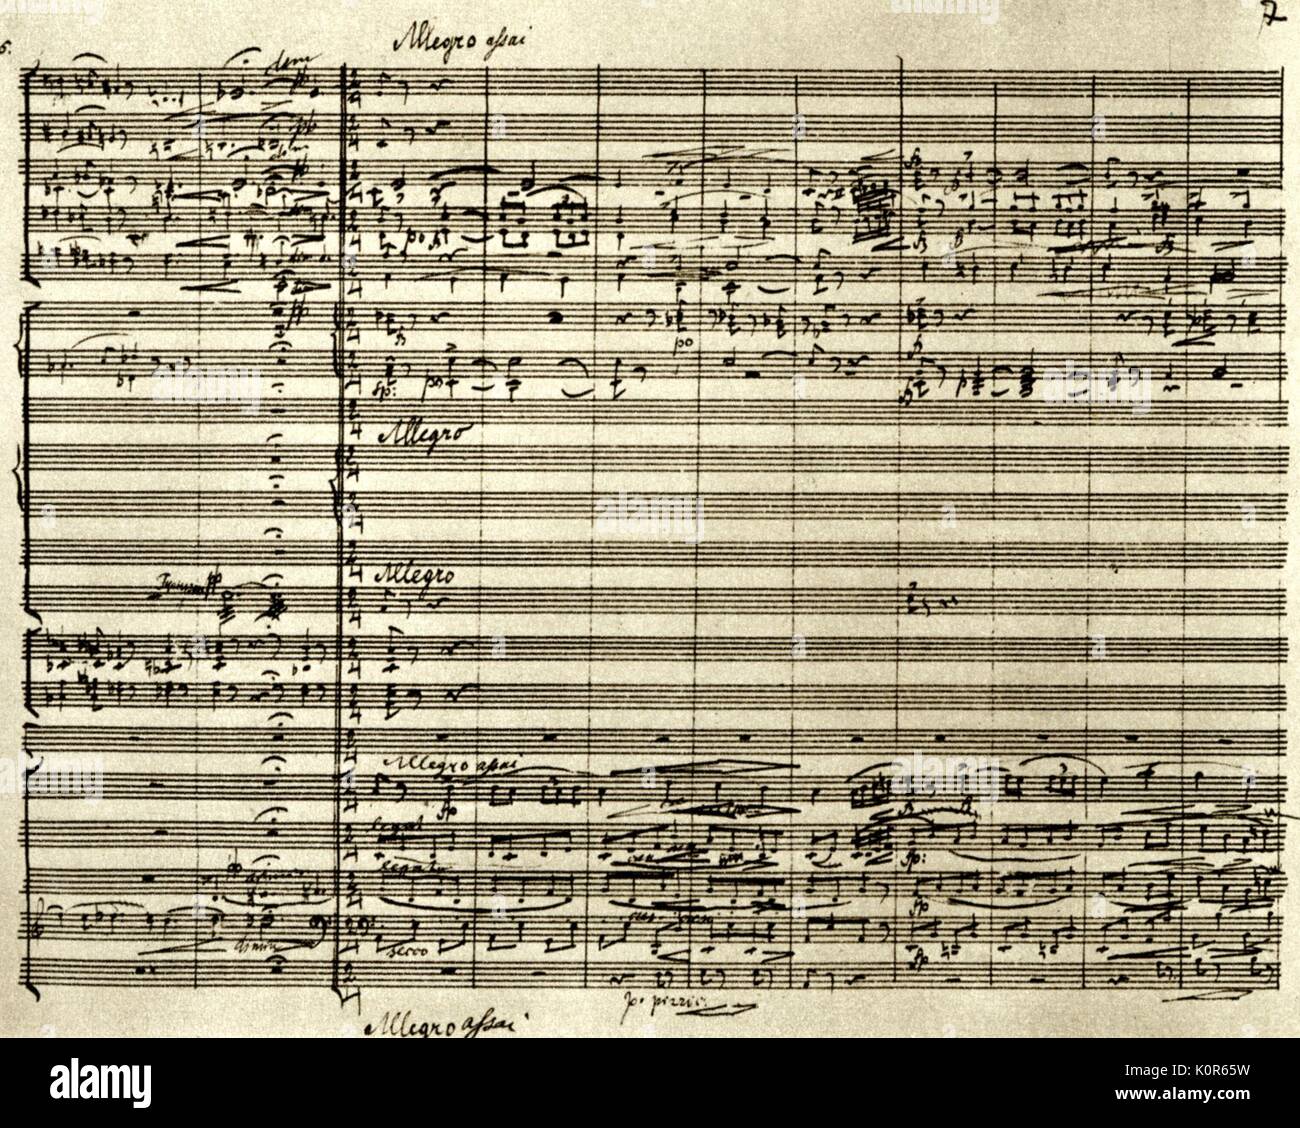 DVORAK,Antonin Rapsodia Slava, Op.45 N.3 compositore ceco (1841-1904) ritratto del compositore ceco, 8 settembre 1841 - 1 Maggio 1904 Foto Stock